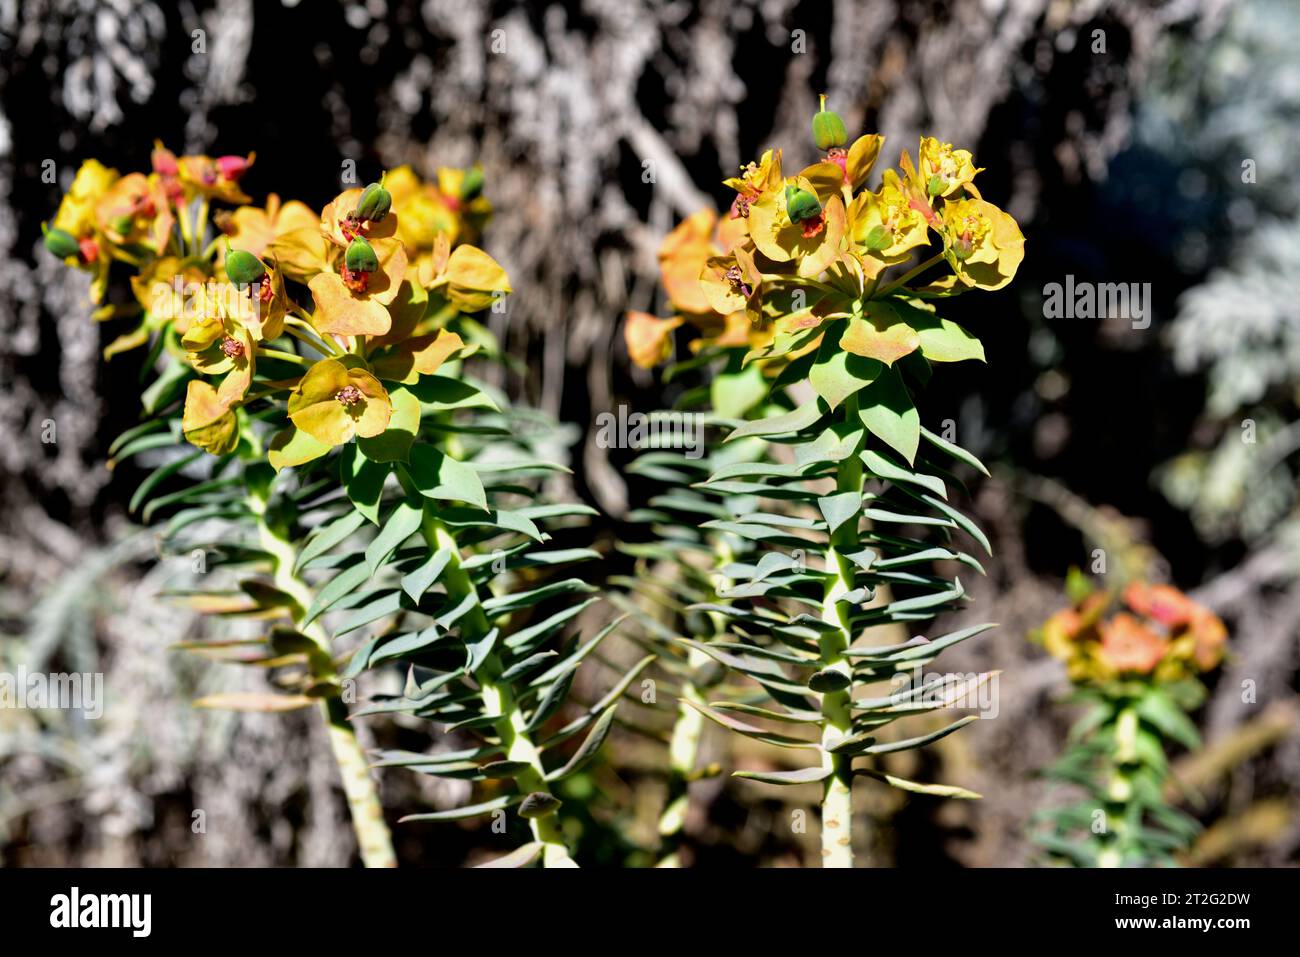 Le Gopher spup (Euphorbia rigia) est un arbuste à feuilles persistantes originaire du sud-ouest de l'Europe et de l'Asie du sud-ouest. Fleurs (cyathia). Banque D'Images